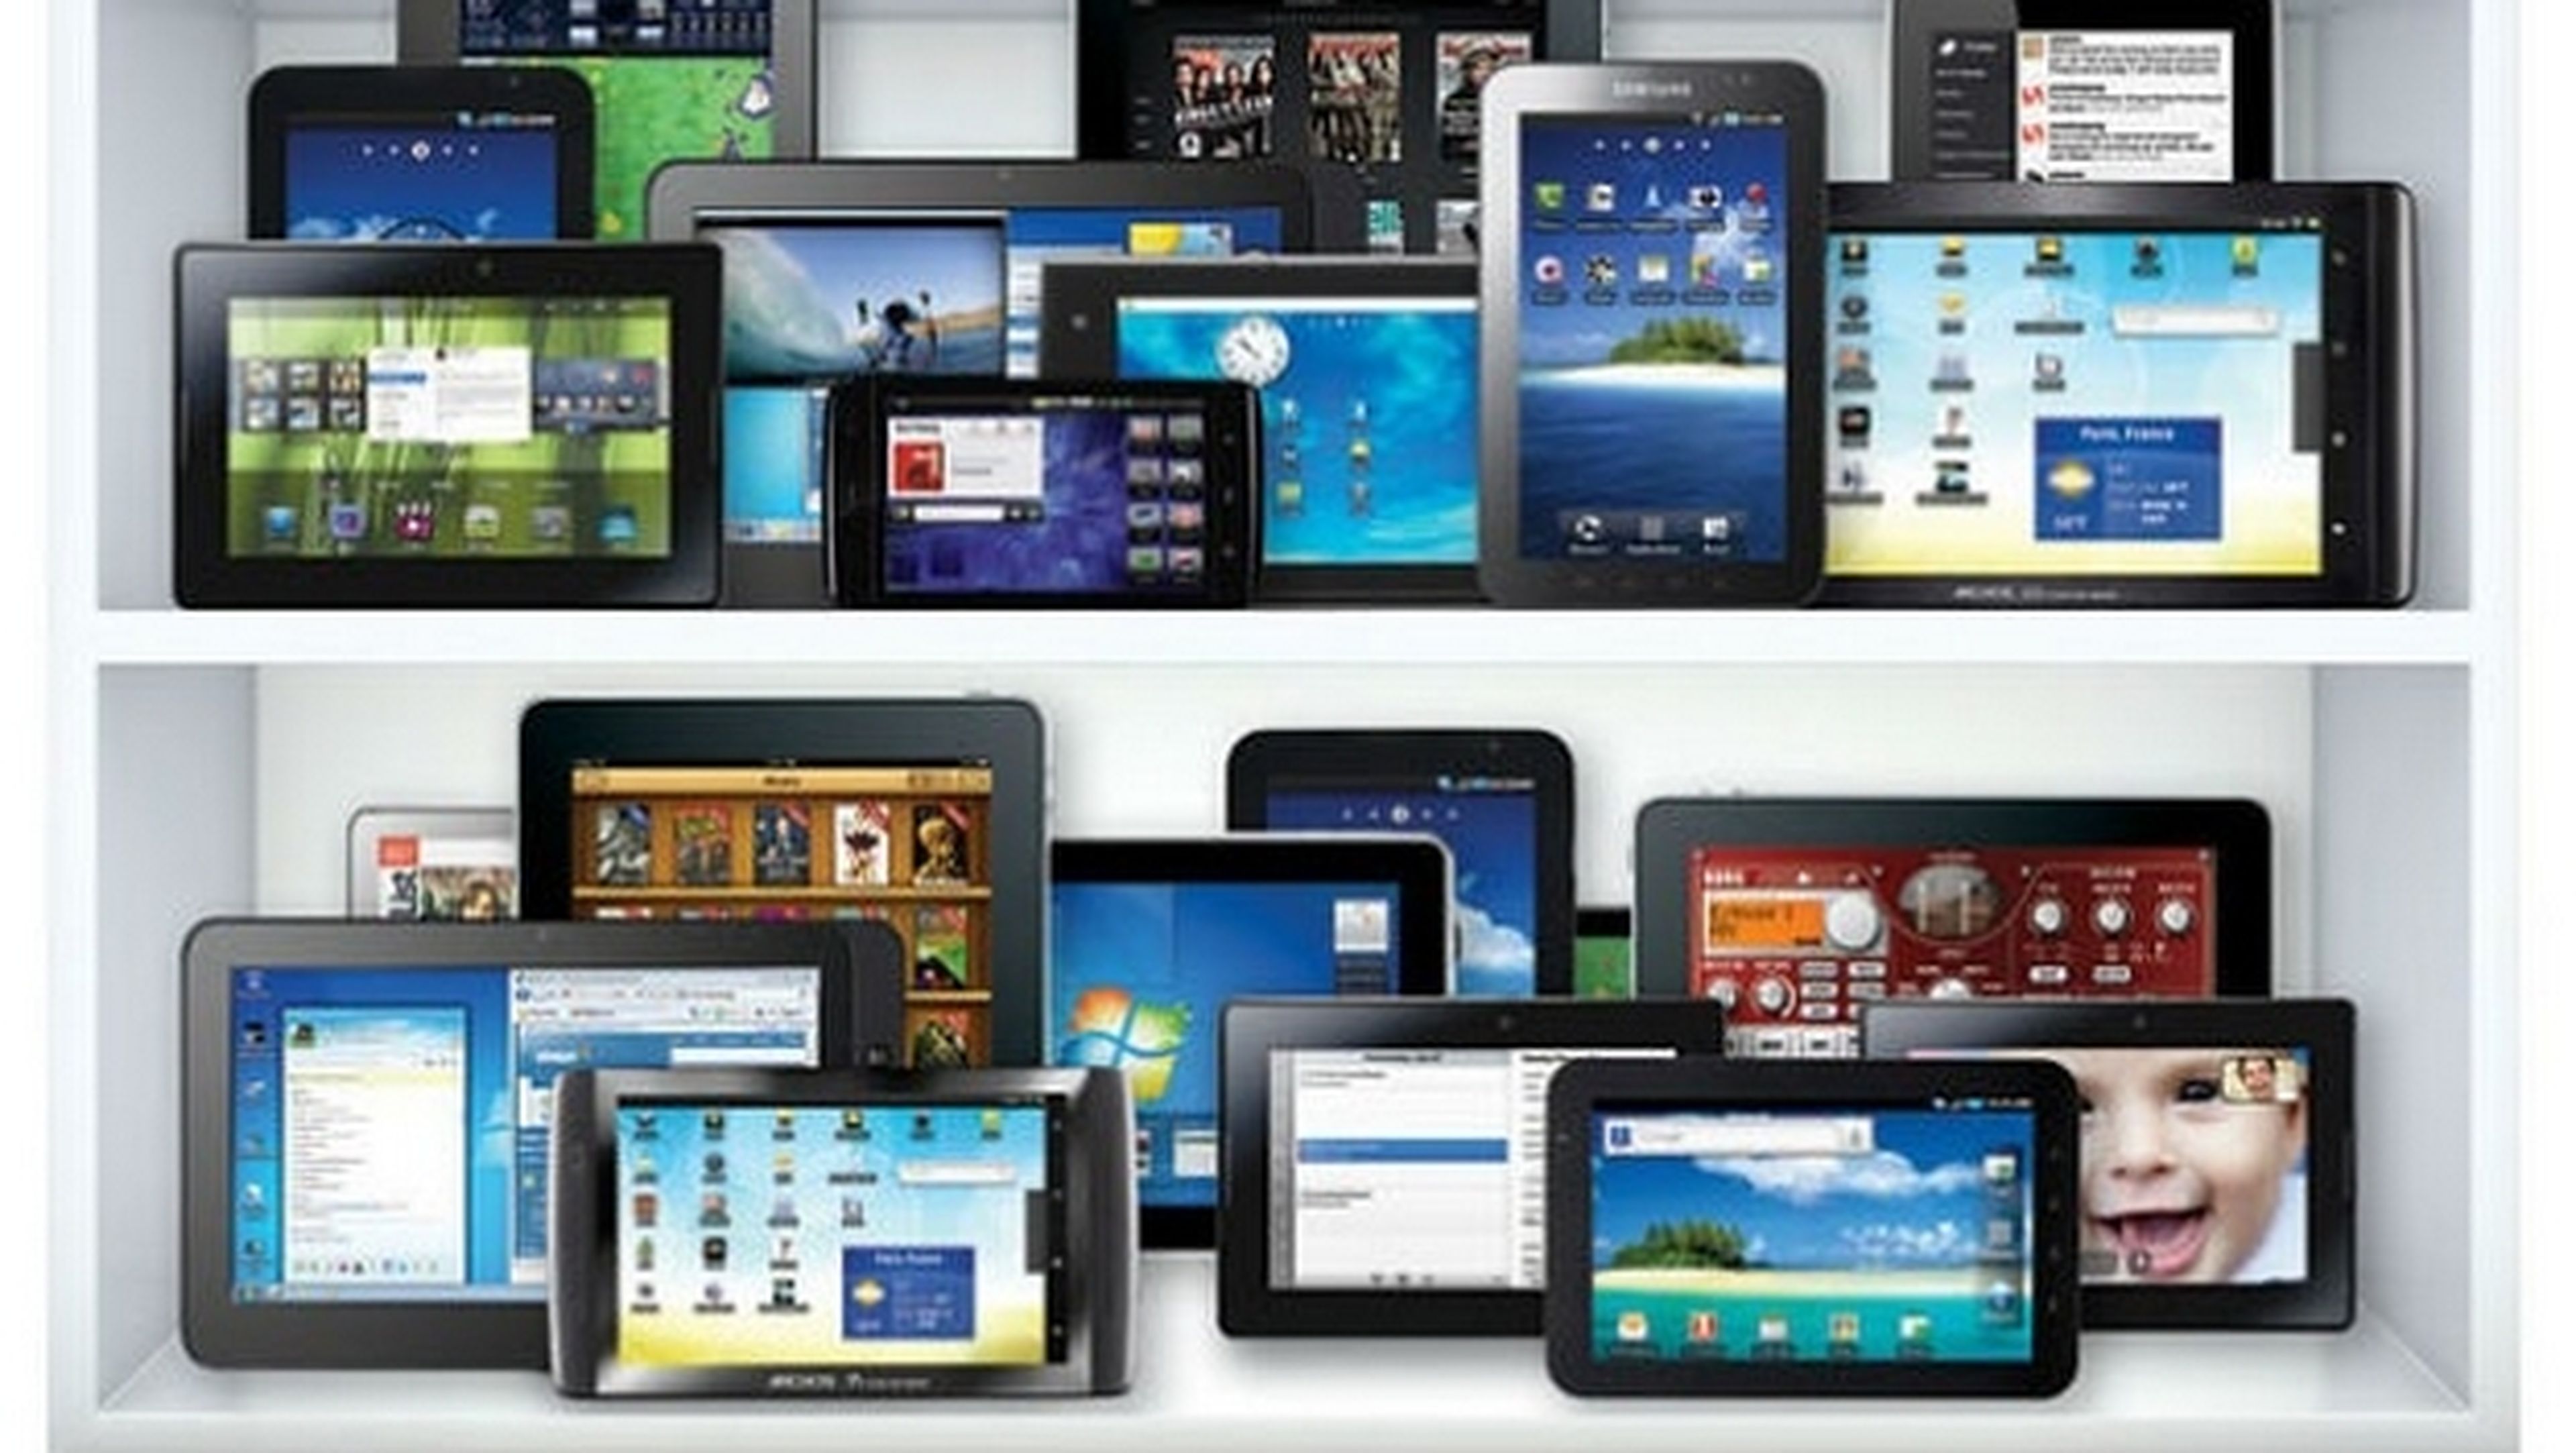 Estas son las 10 tablets más potentes del mercado. Microsoft Surface Pro 3 supera a los iPad.